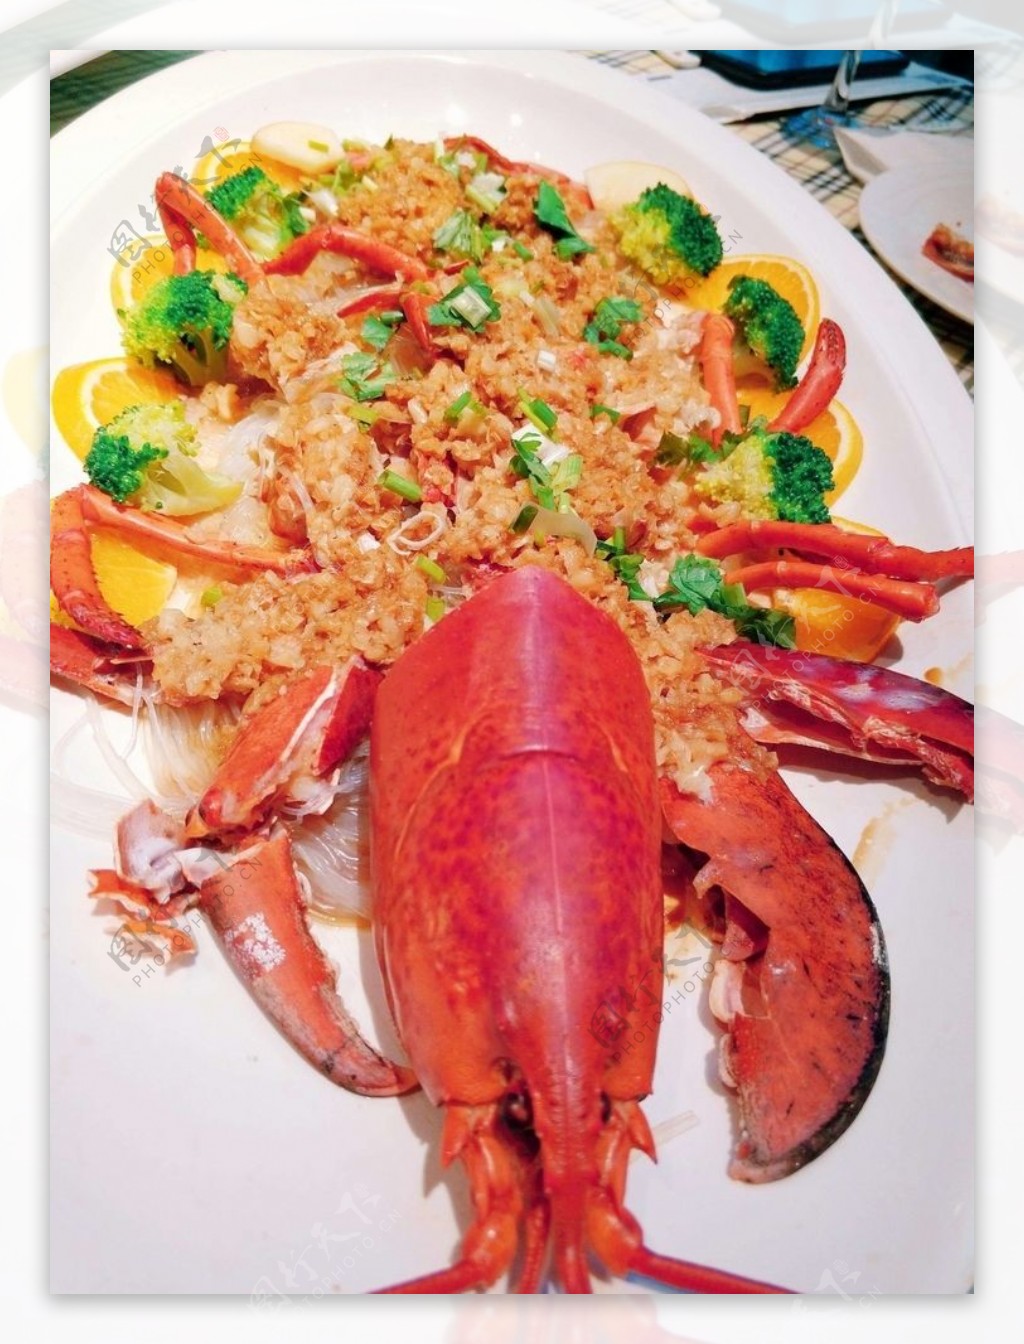 烤河龙虾在泰国 库存图片. 图片 包括有 理发店, 食物, 可口, 健康, 甲壳动物, 膳食, 海运, 正餐 - 32928633